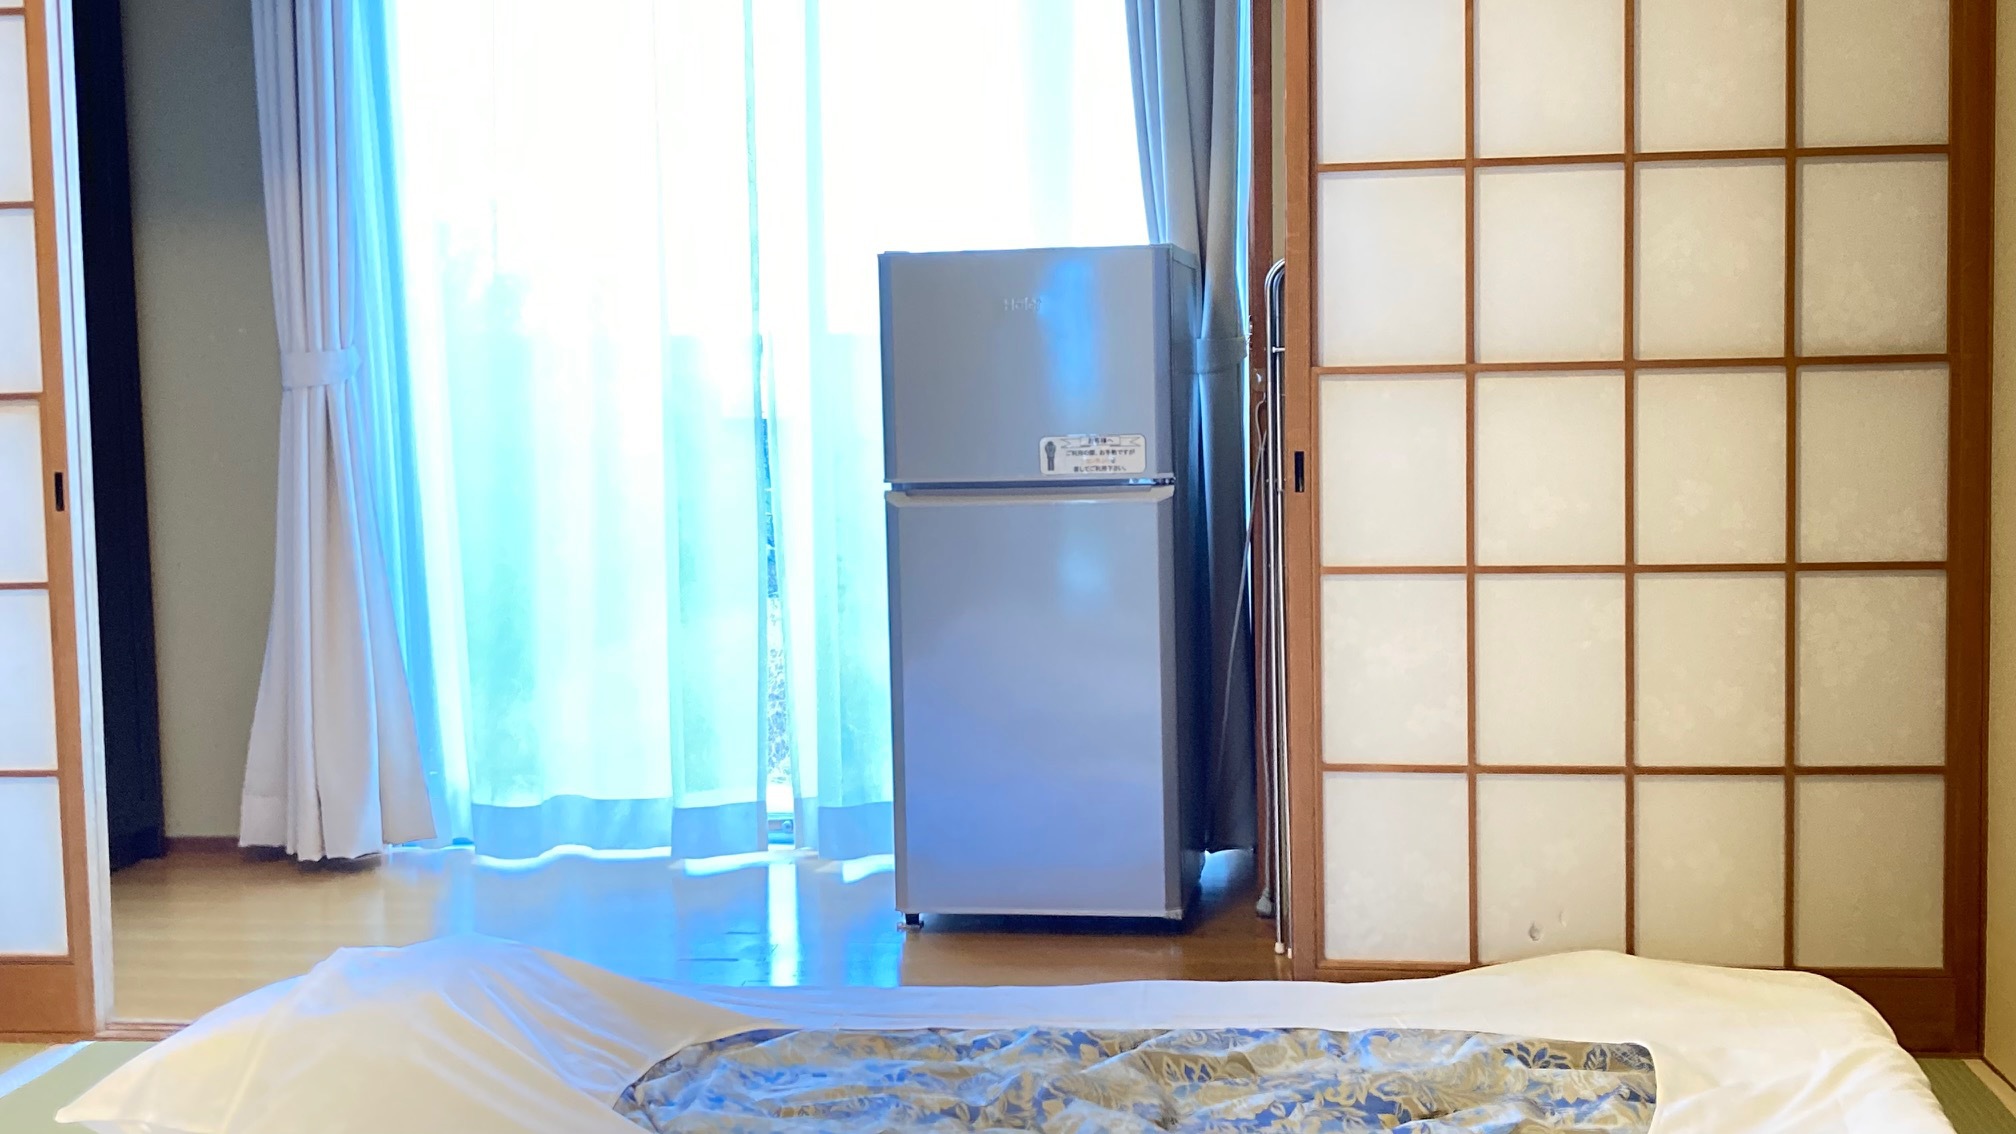 和室、和洋室には大きな冷凍・冷蔵庫を完備していま す。